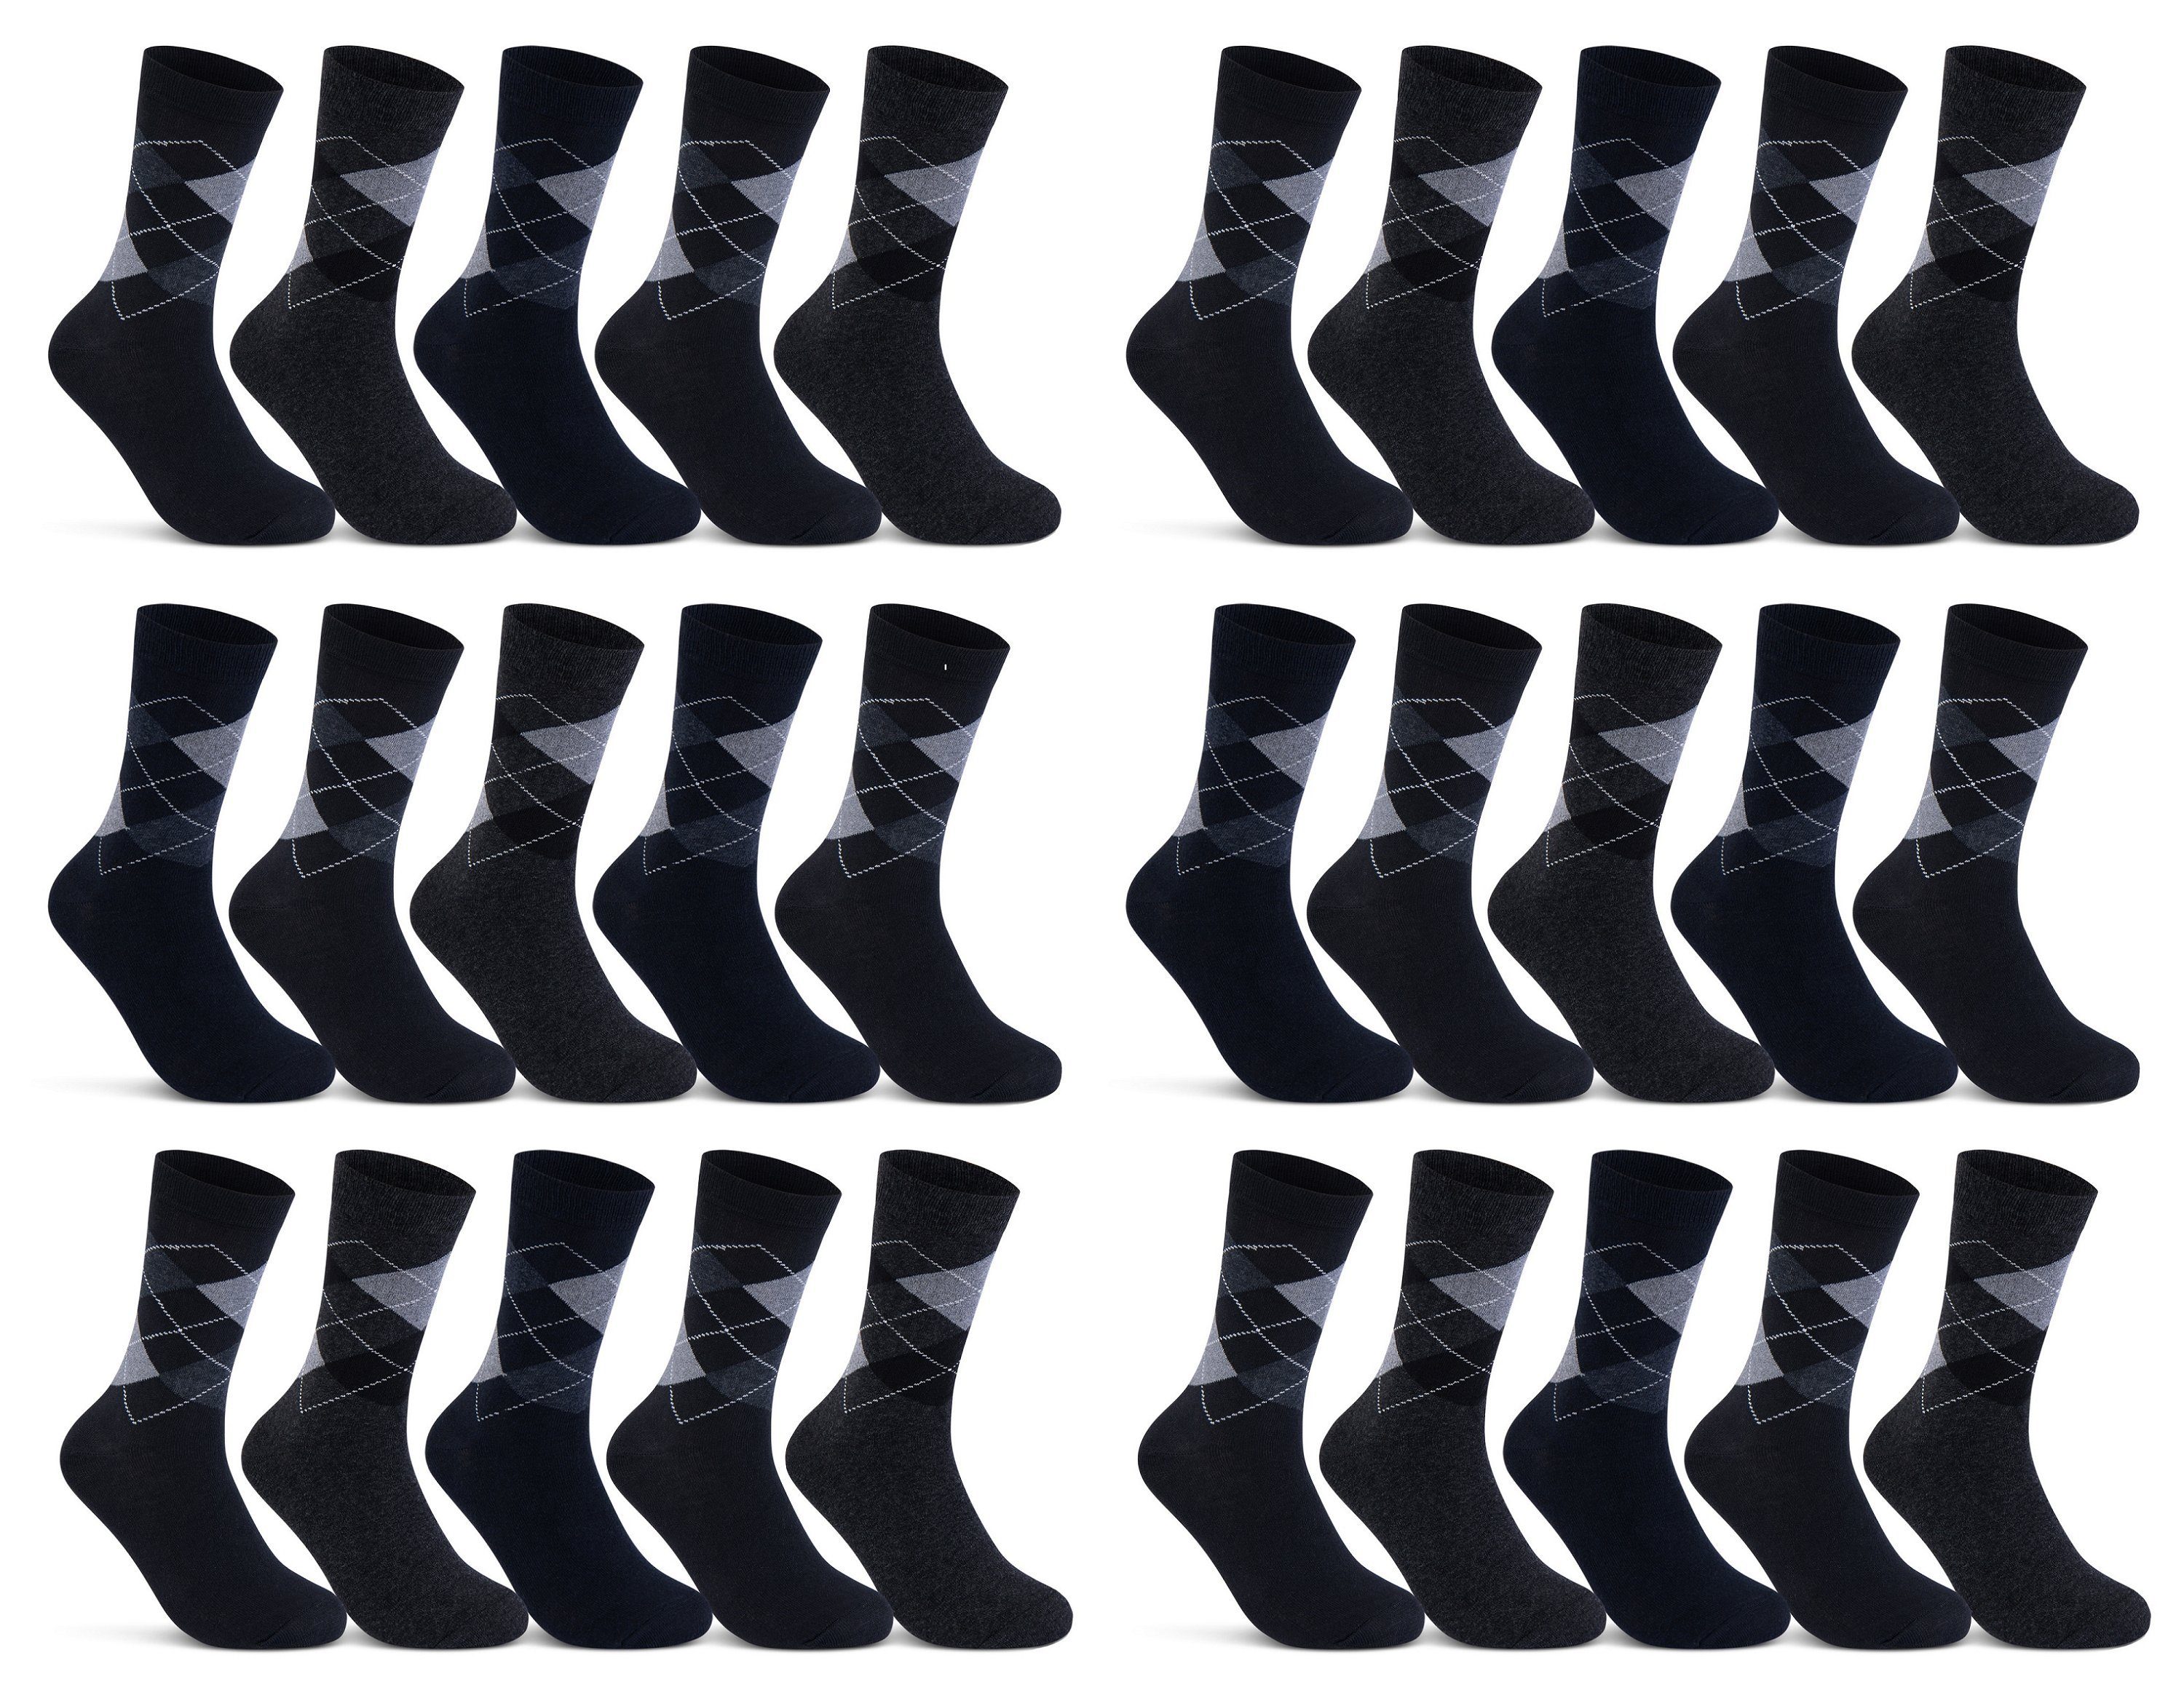 sockenkauf24 Socken 10 I 20 I 30 Paar Damen & Herren Business Socken Baumwolle (Karo, 10-Paar, 43-46) mit Komfortbund Strümpfe - 10700